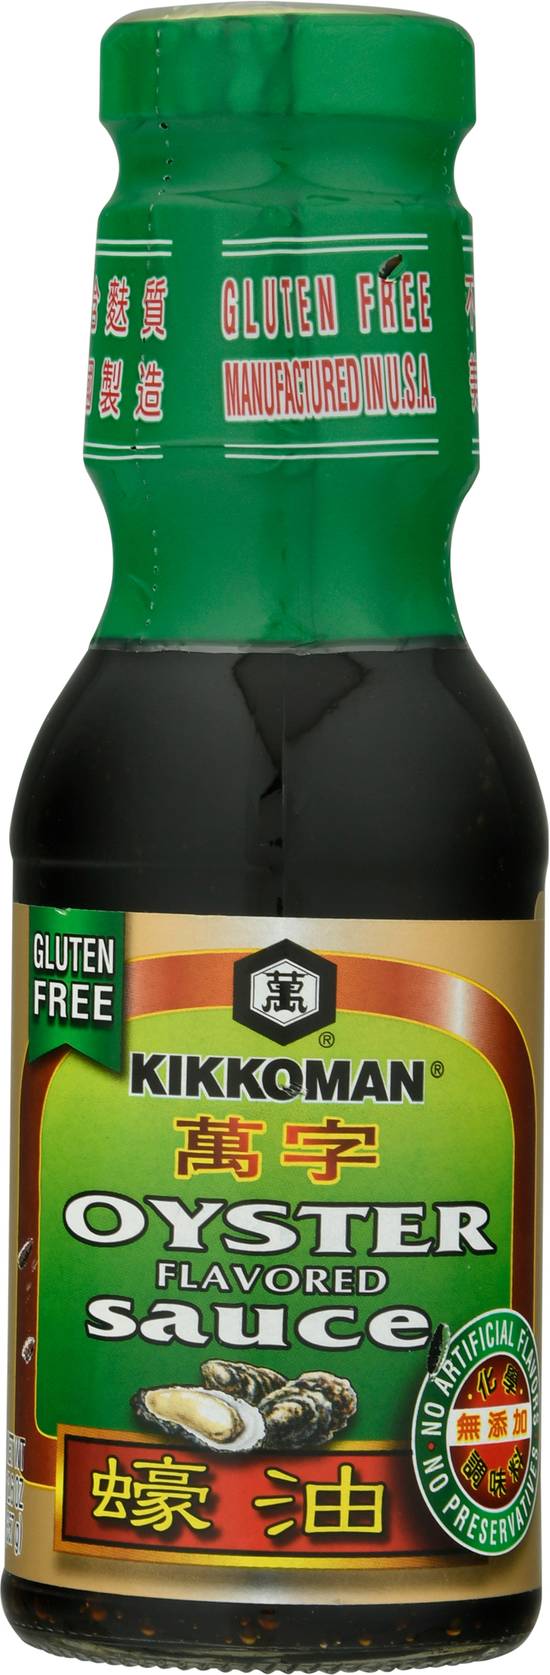 Kikkoman Gluten Free Oyster Flavored Sauce